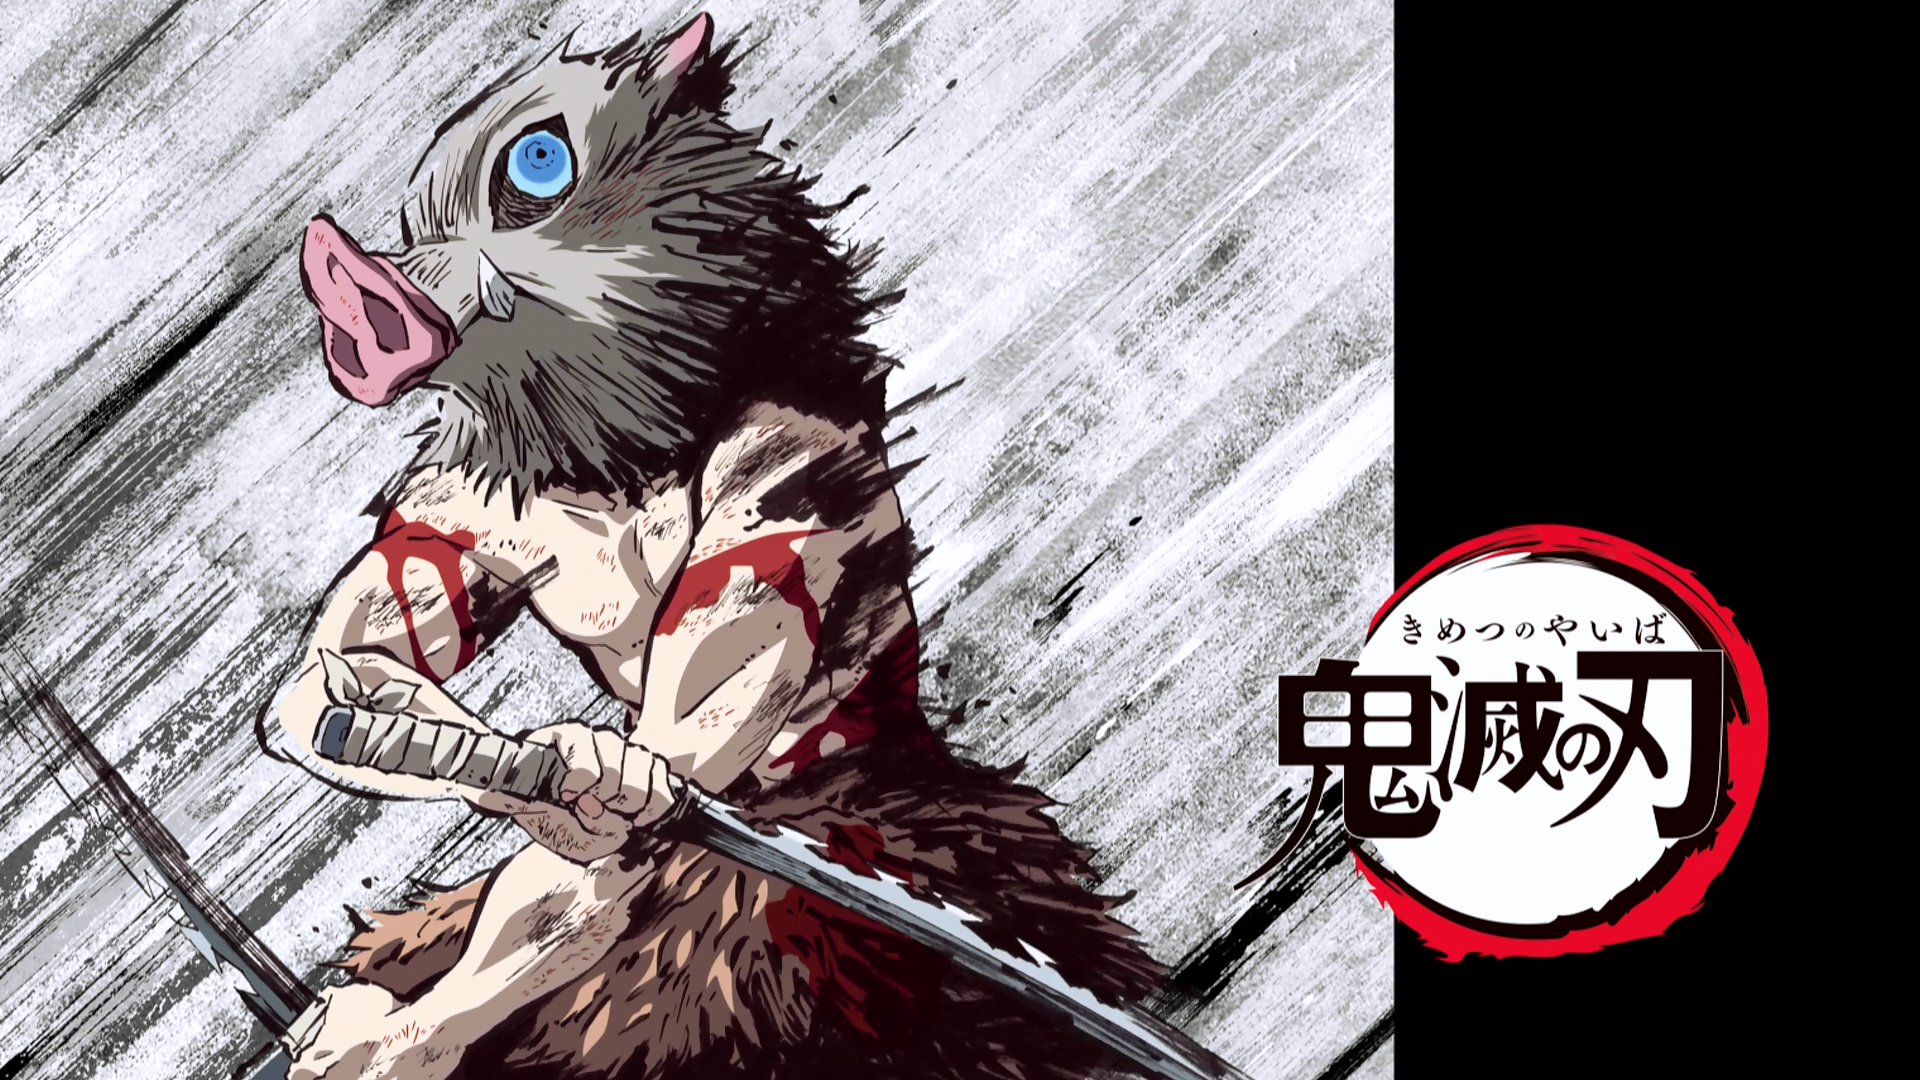 Aniplex USA - Demon Slayer: Kimetsu no Yaiba episode 18